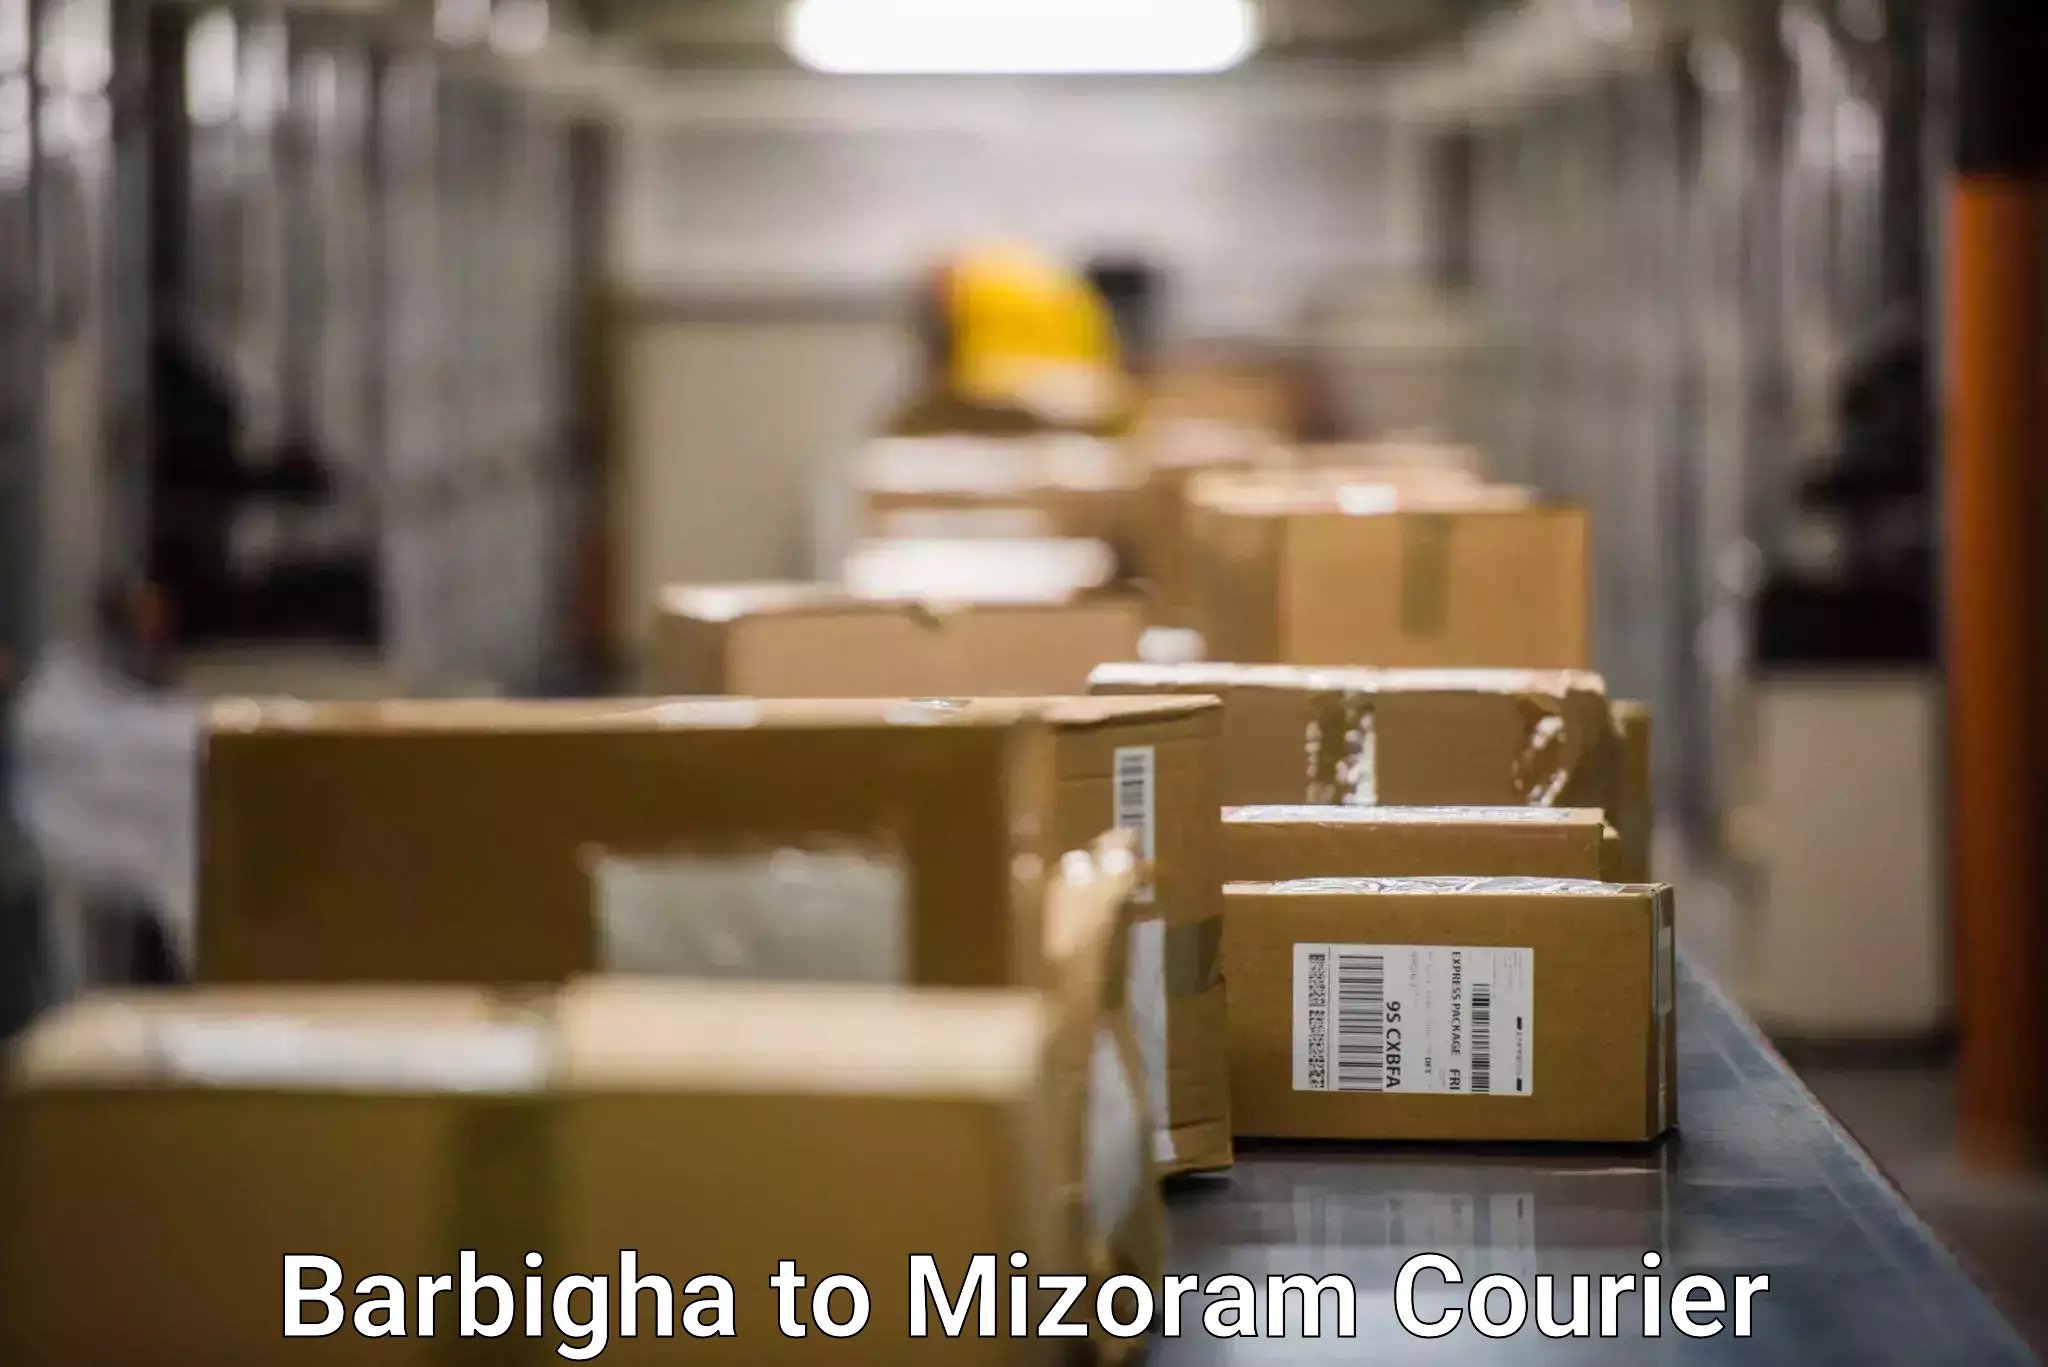 Customer-centric shipping Barbigha to Aizawl